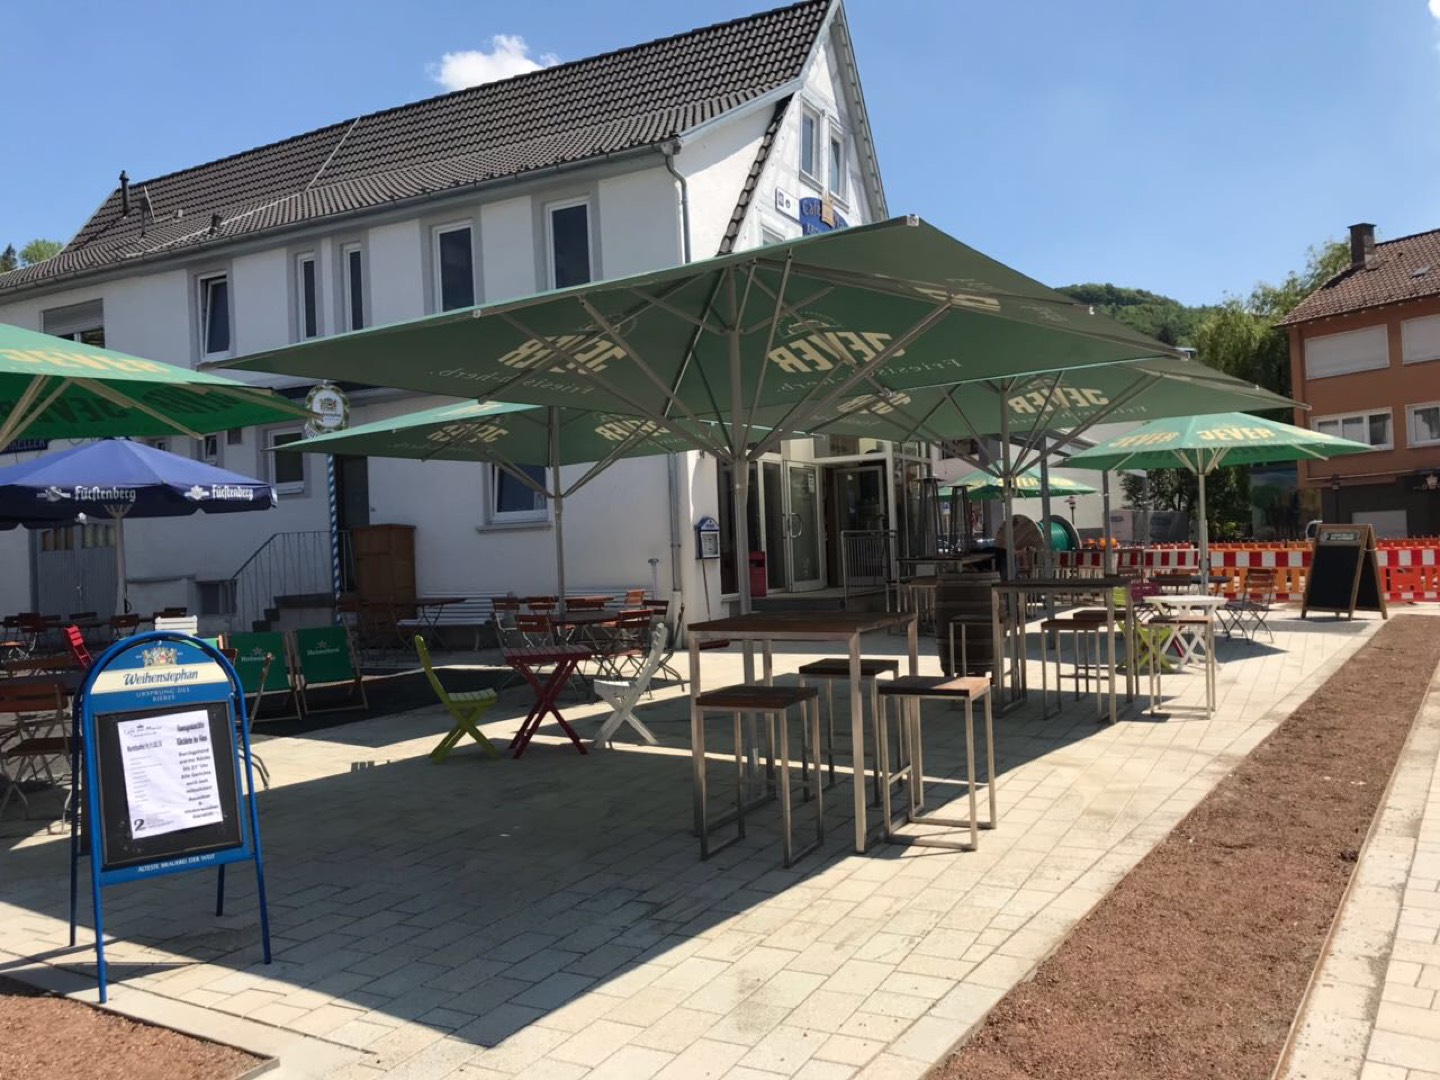 Bild 1 Café am Markt und Kronenkeller in Albstadt